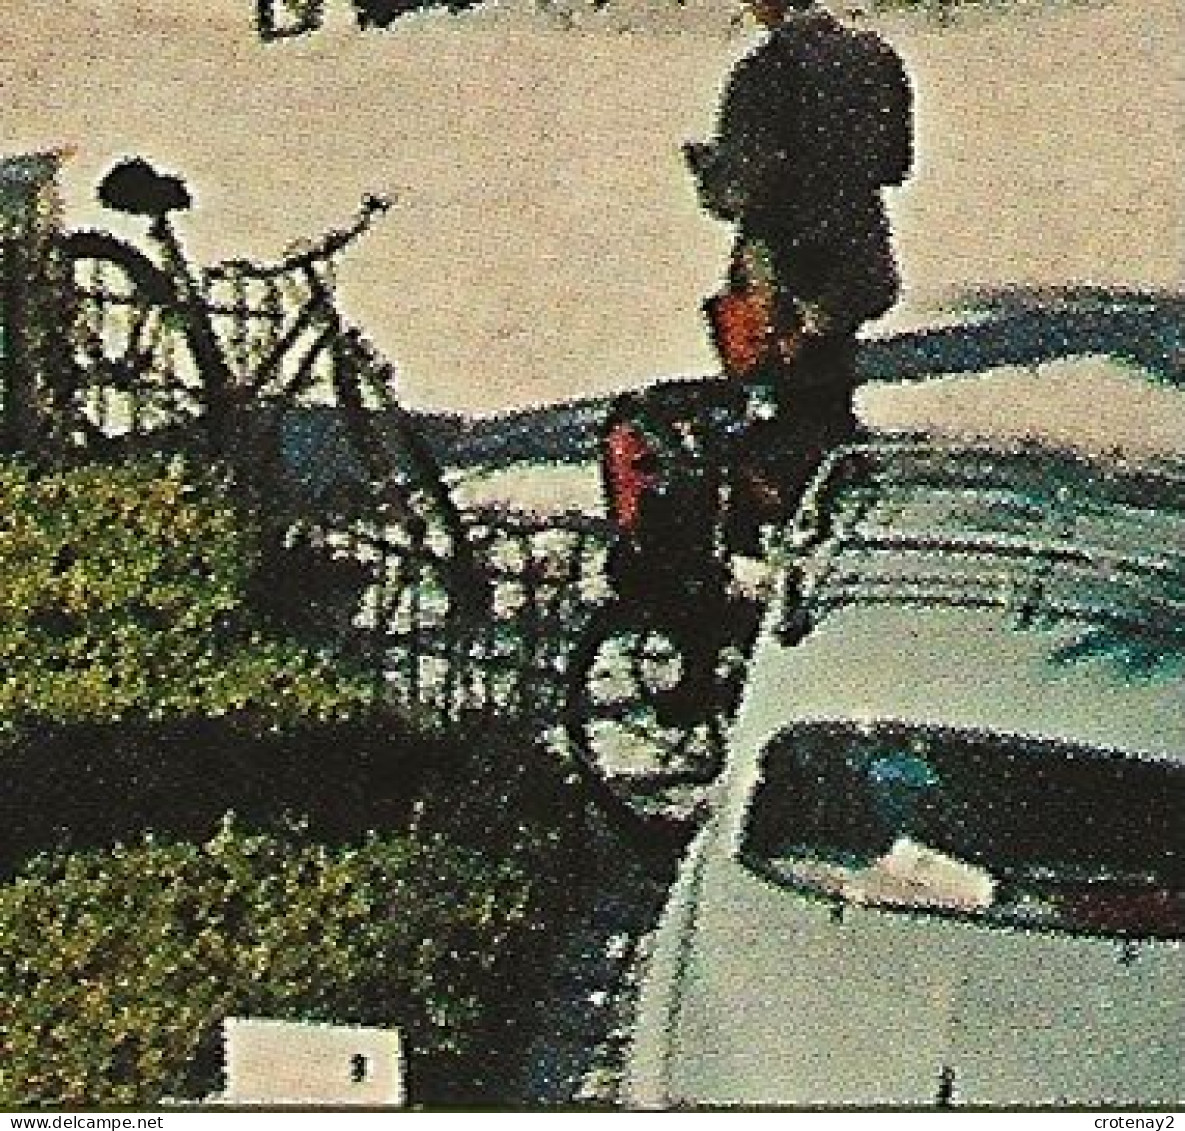 06 NICE N°169 Promenade Des Anglais En 1965 VOIR ZOOMS SOLEX Dyna Panhard Peugeot 403 Juva 4 Simca Ariane Vespa - Parcs Et Jardins